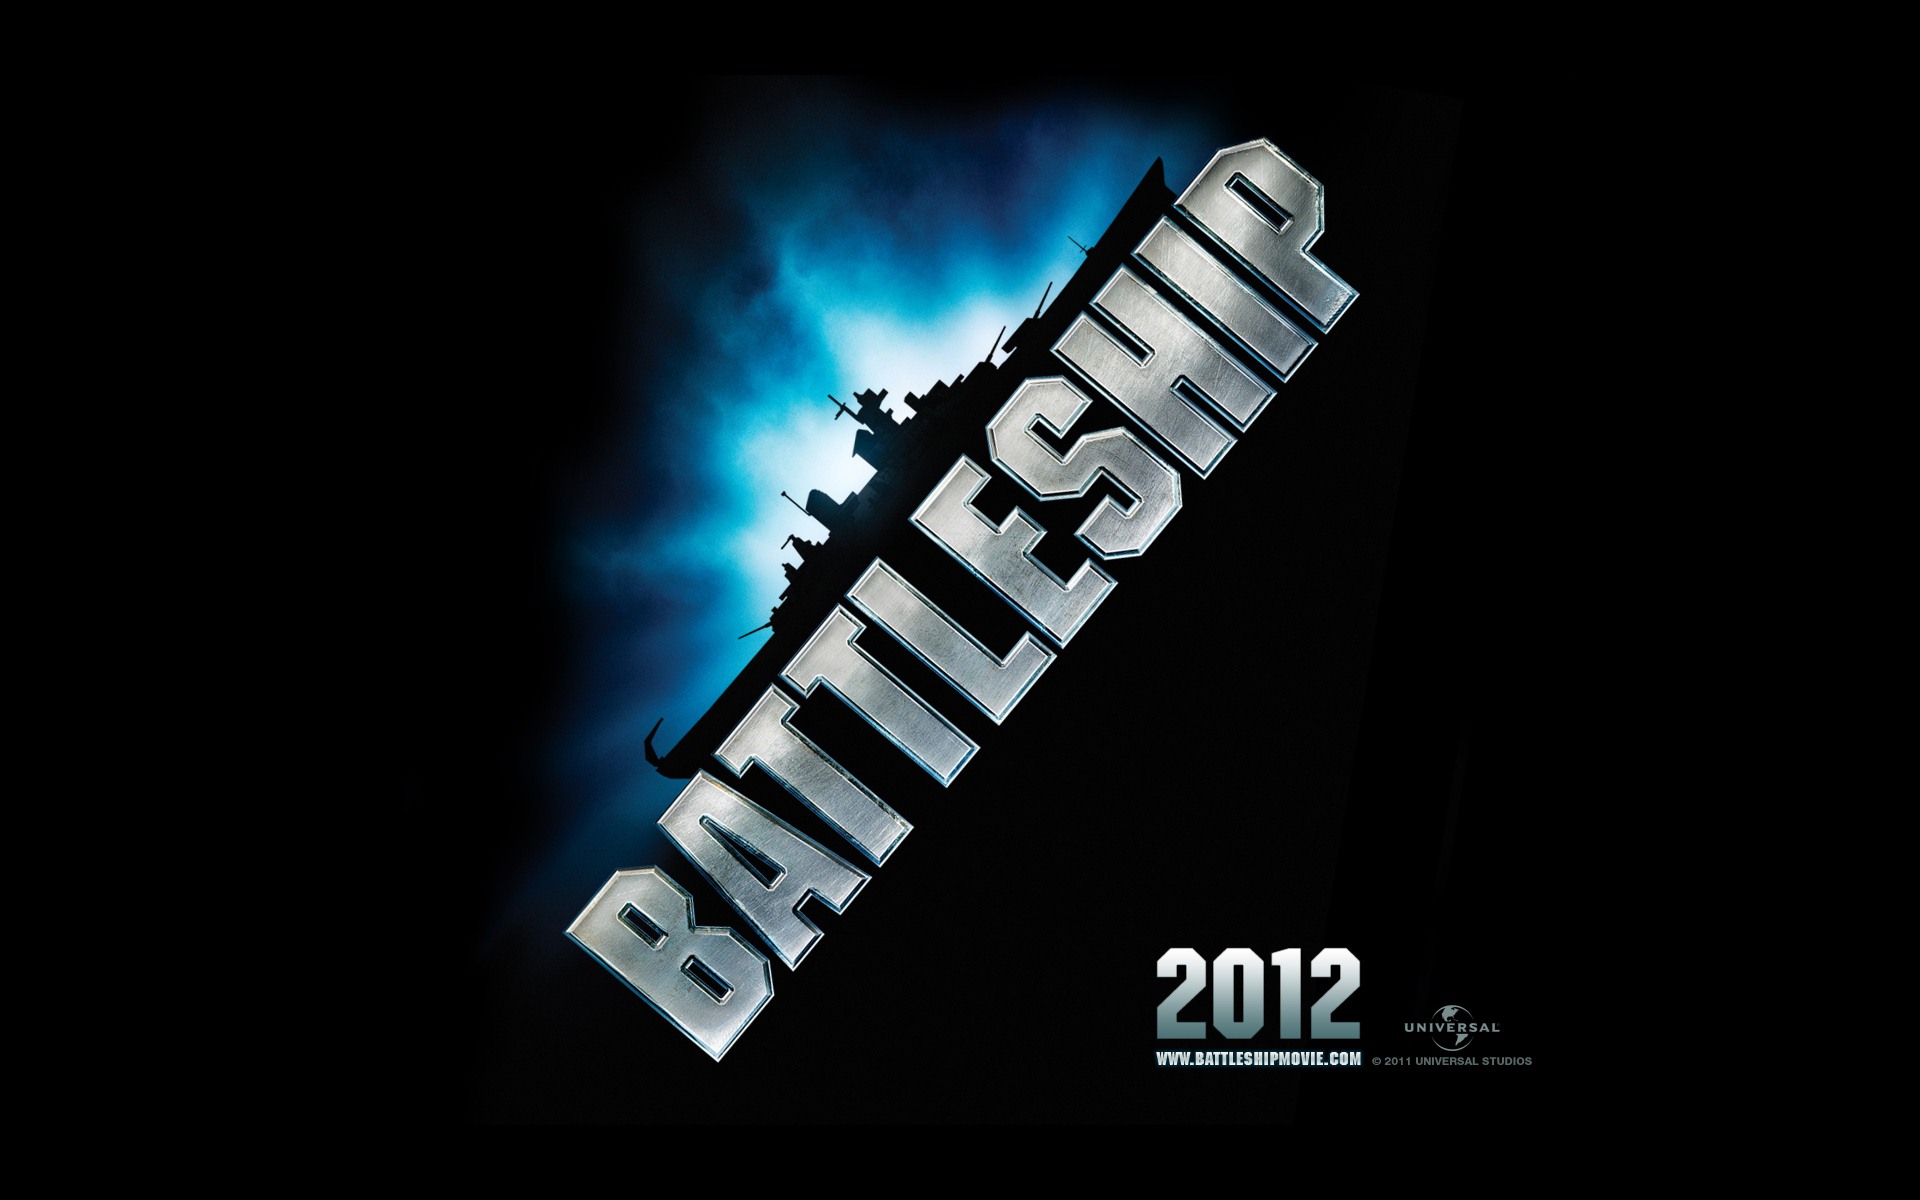 Battleship 2012 HD wallpapers #2 - 1920x1200